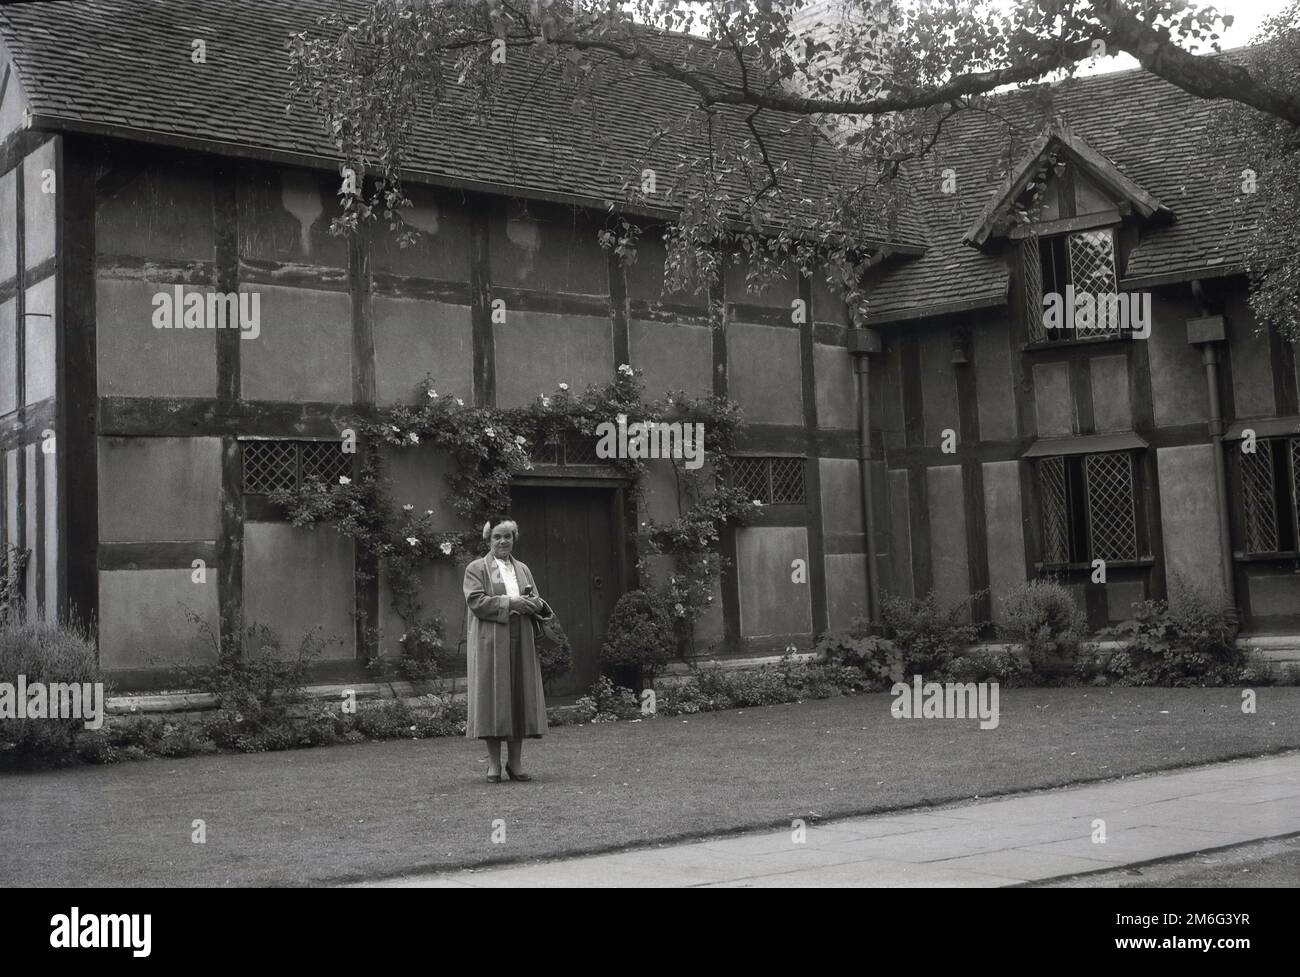 1950s, historique, une dame se tenant sur une pelouse à l'arrière du lieu de naissance de William Shakespeare, une maison à colombages de 16th siècle à Henley Street, Stratford-upon-Avon, Angleterre, Royaume-Uni. La vieille maison a été achetée par le Shakespeare Birthplace Trust en 1847. Banque D'Images